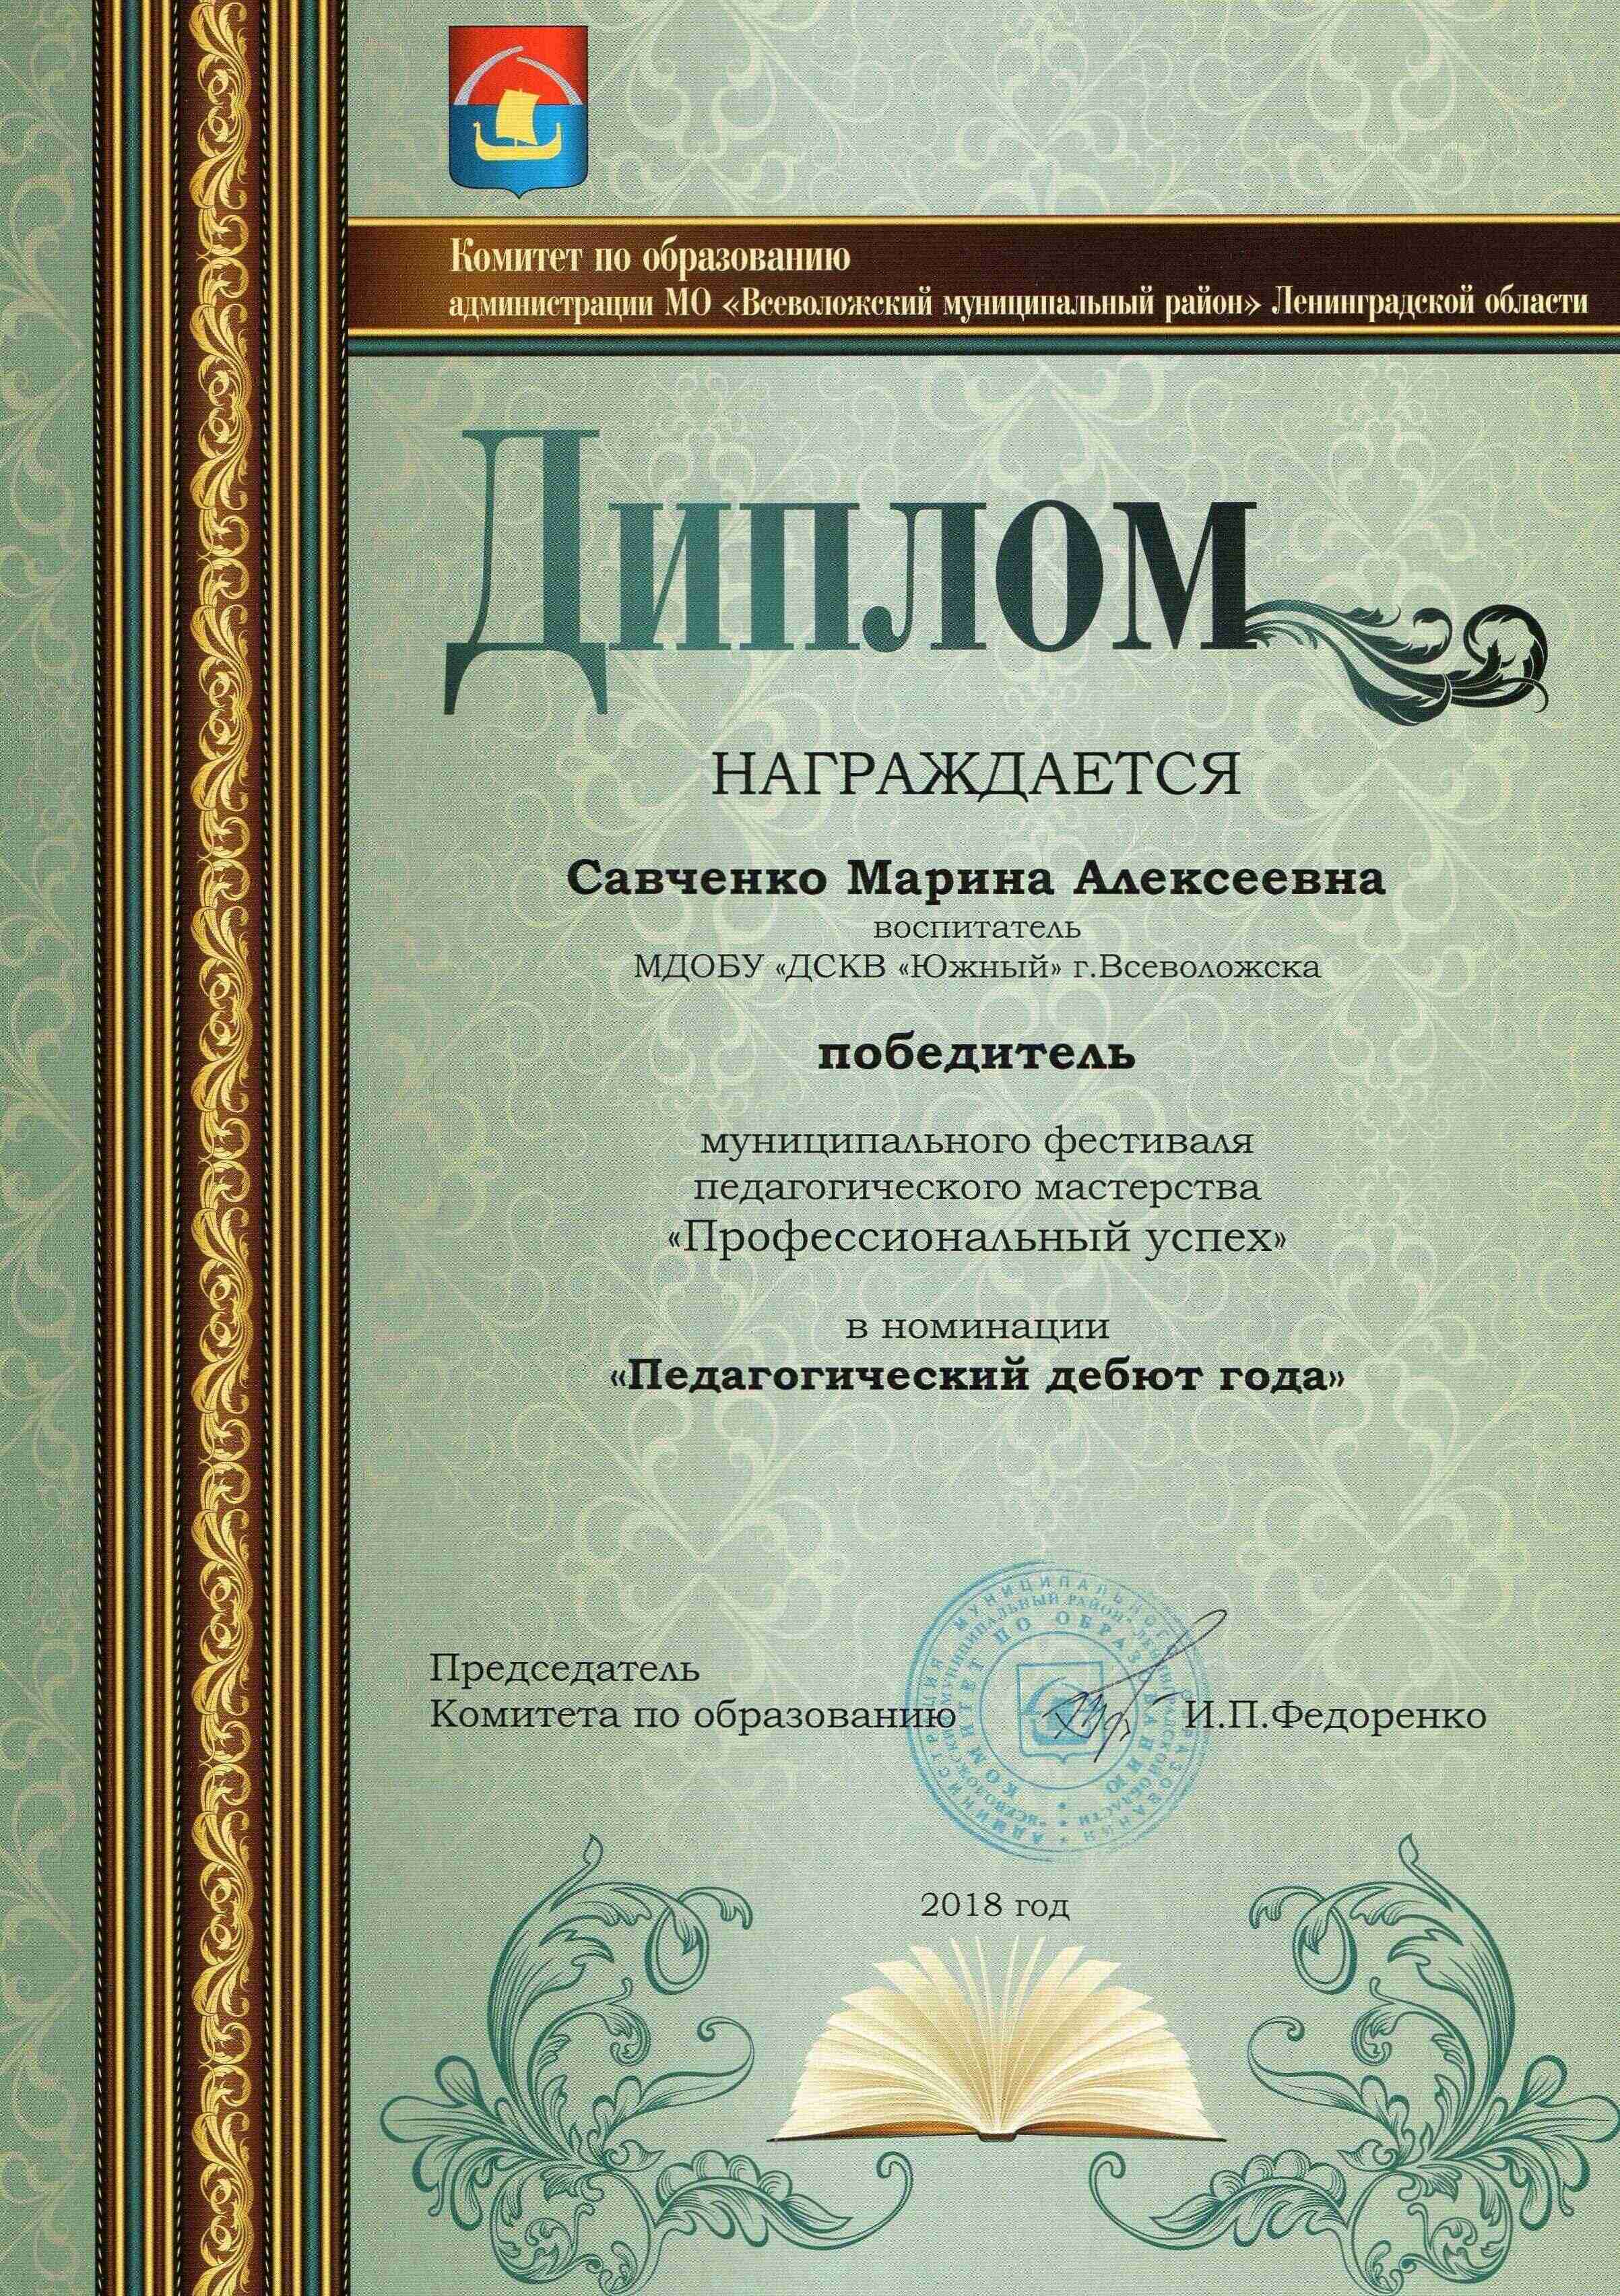 Диплом победителя Савченко 1 1